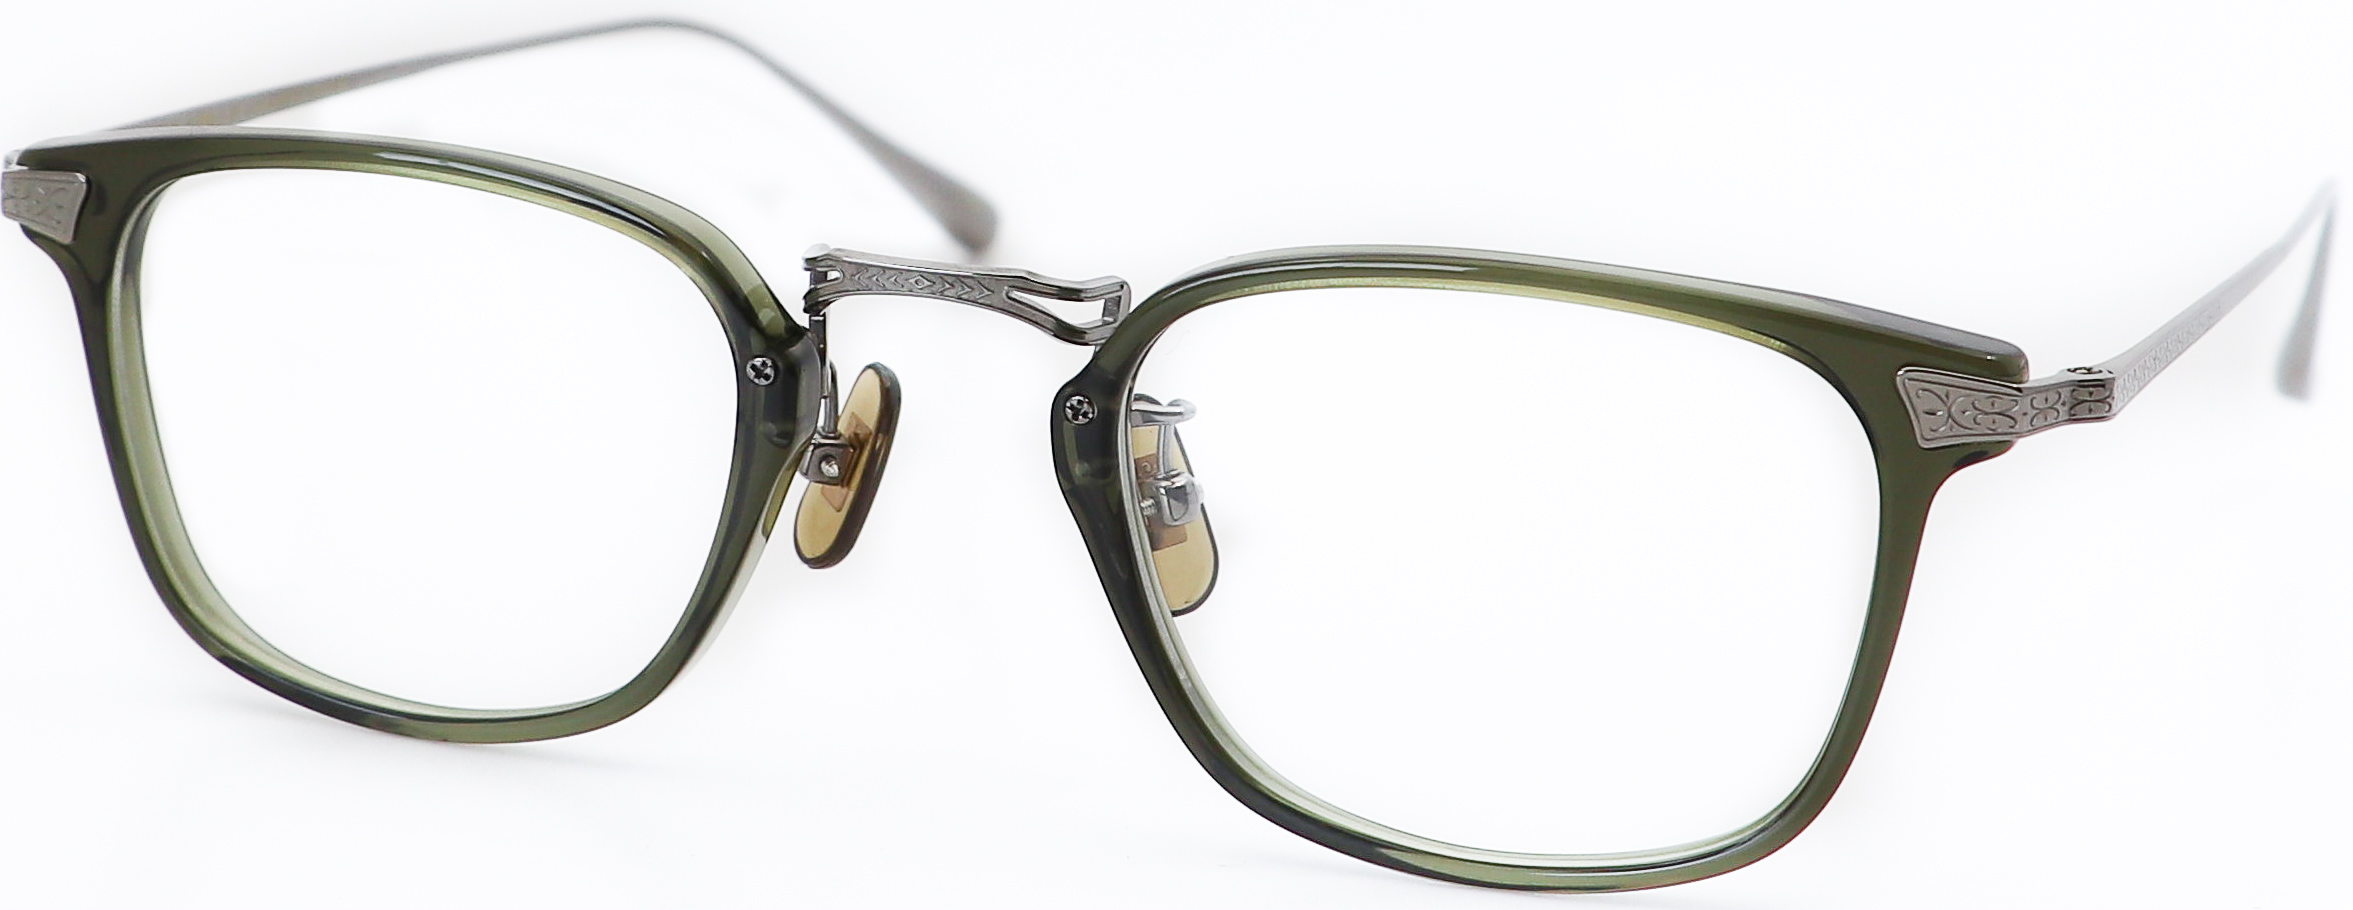 眼鏡のカラータイプC-4 Khaki/Gray